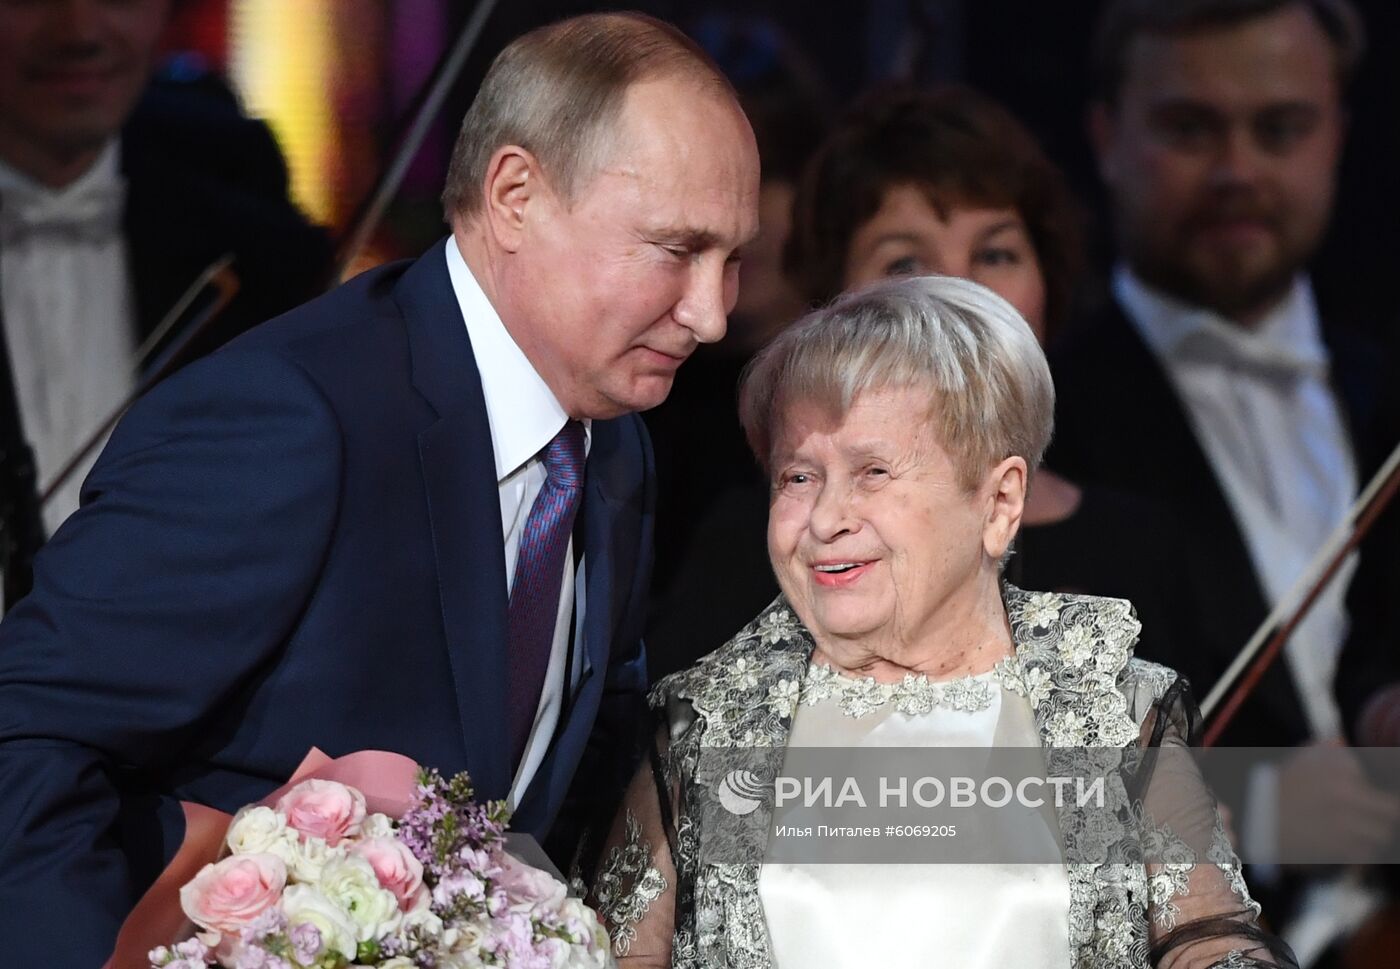 Президент РФ В. Путин посетил юбилейный вечер А. Пахмутовой